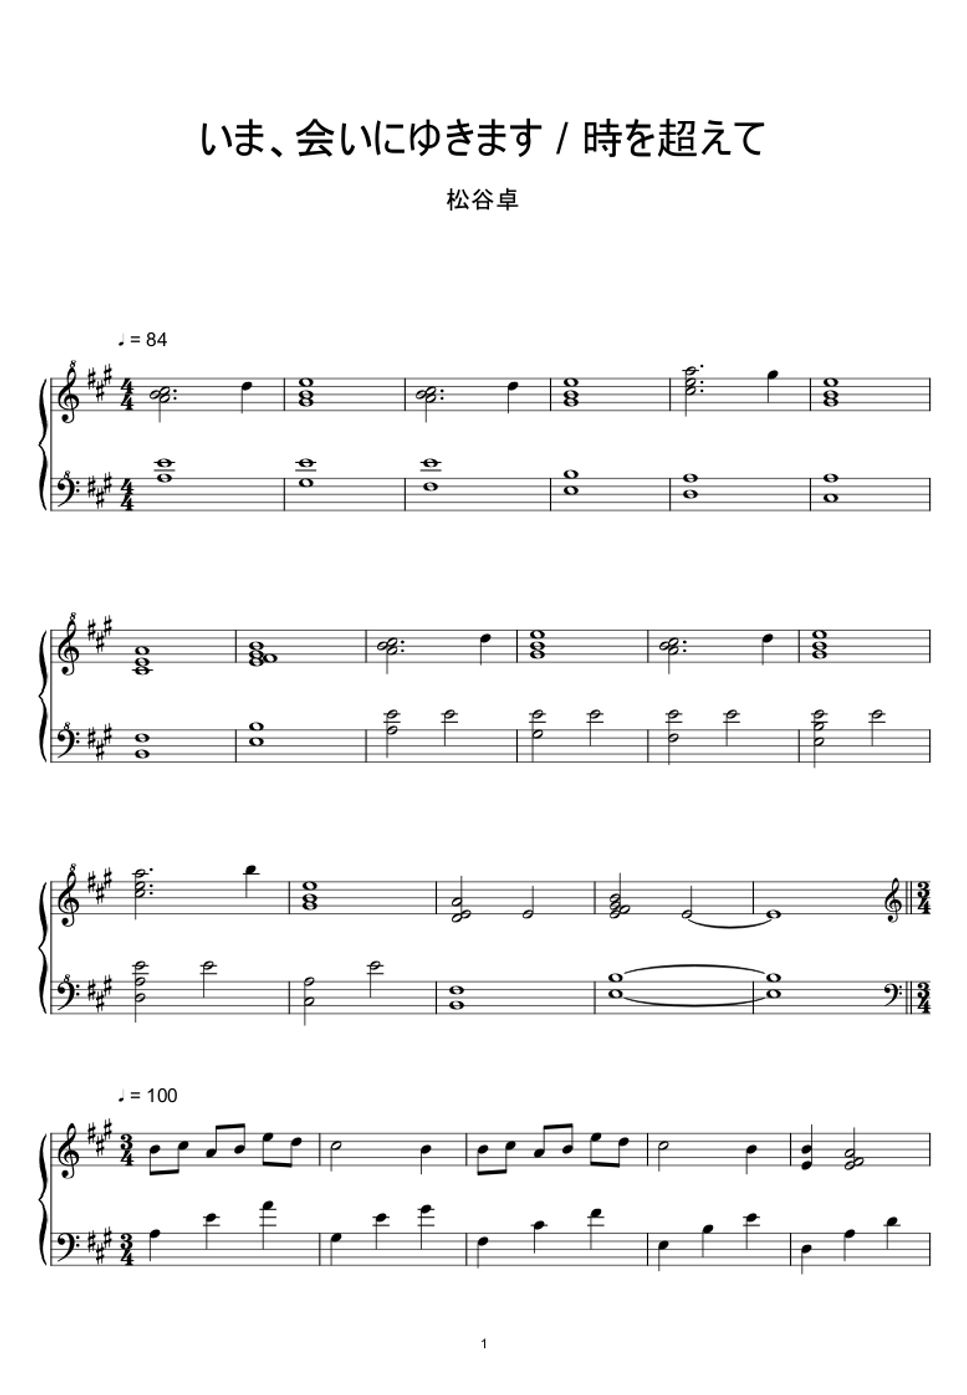 Suguru Matsutani - Ima, Aini Yukimasu / Toki wo koete (Sheet Music, MIDI,) by sayu